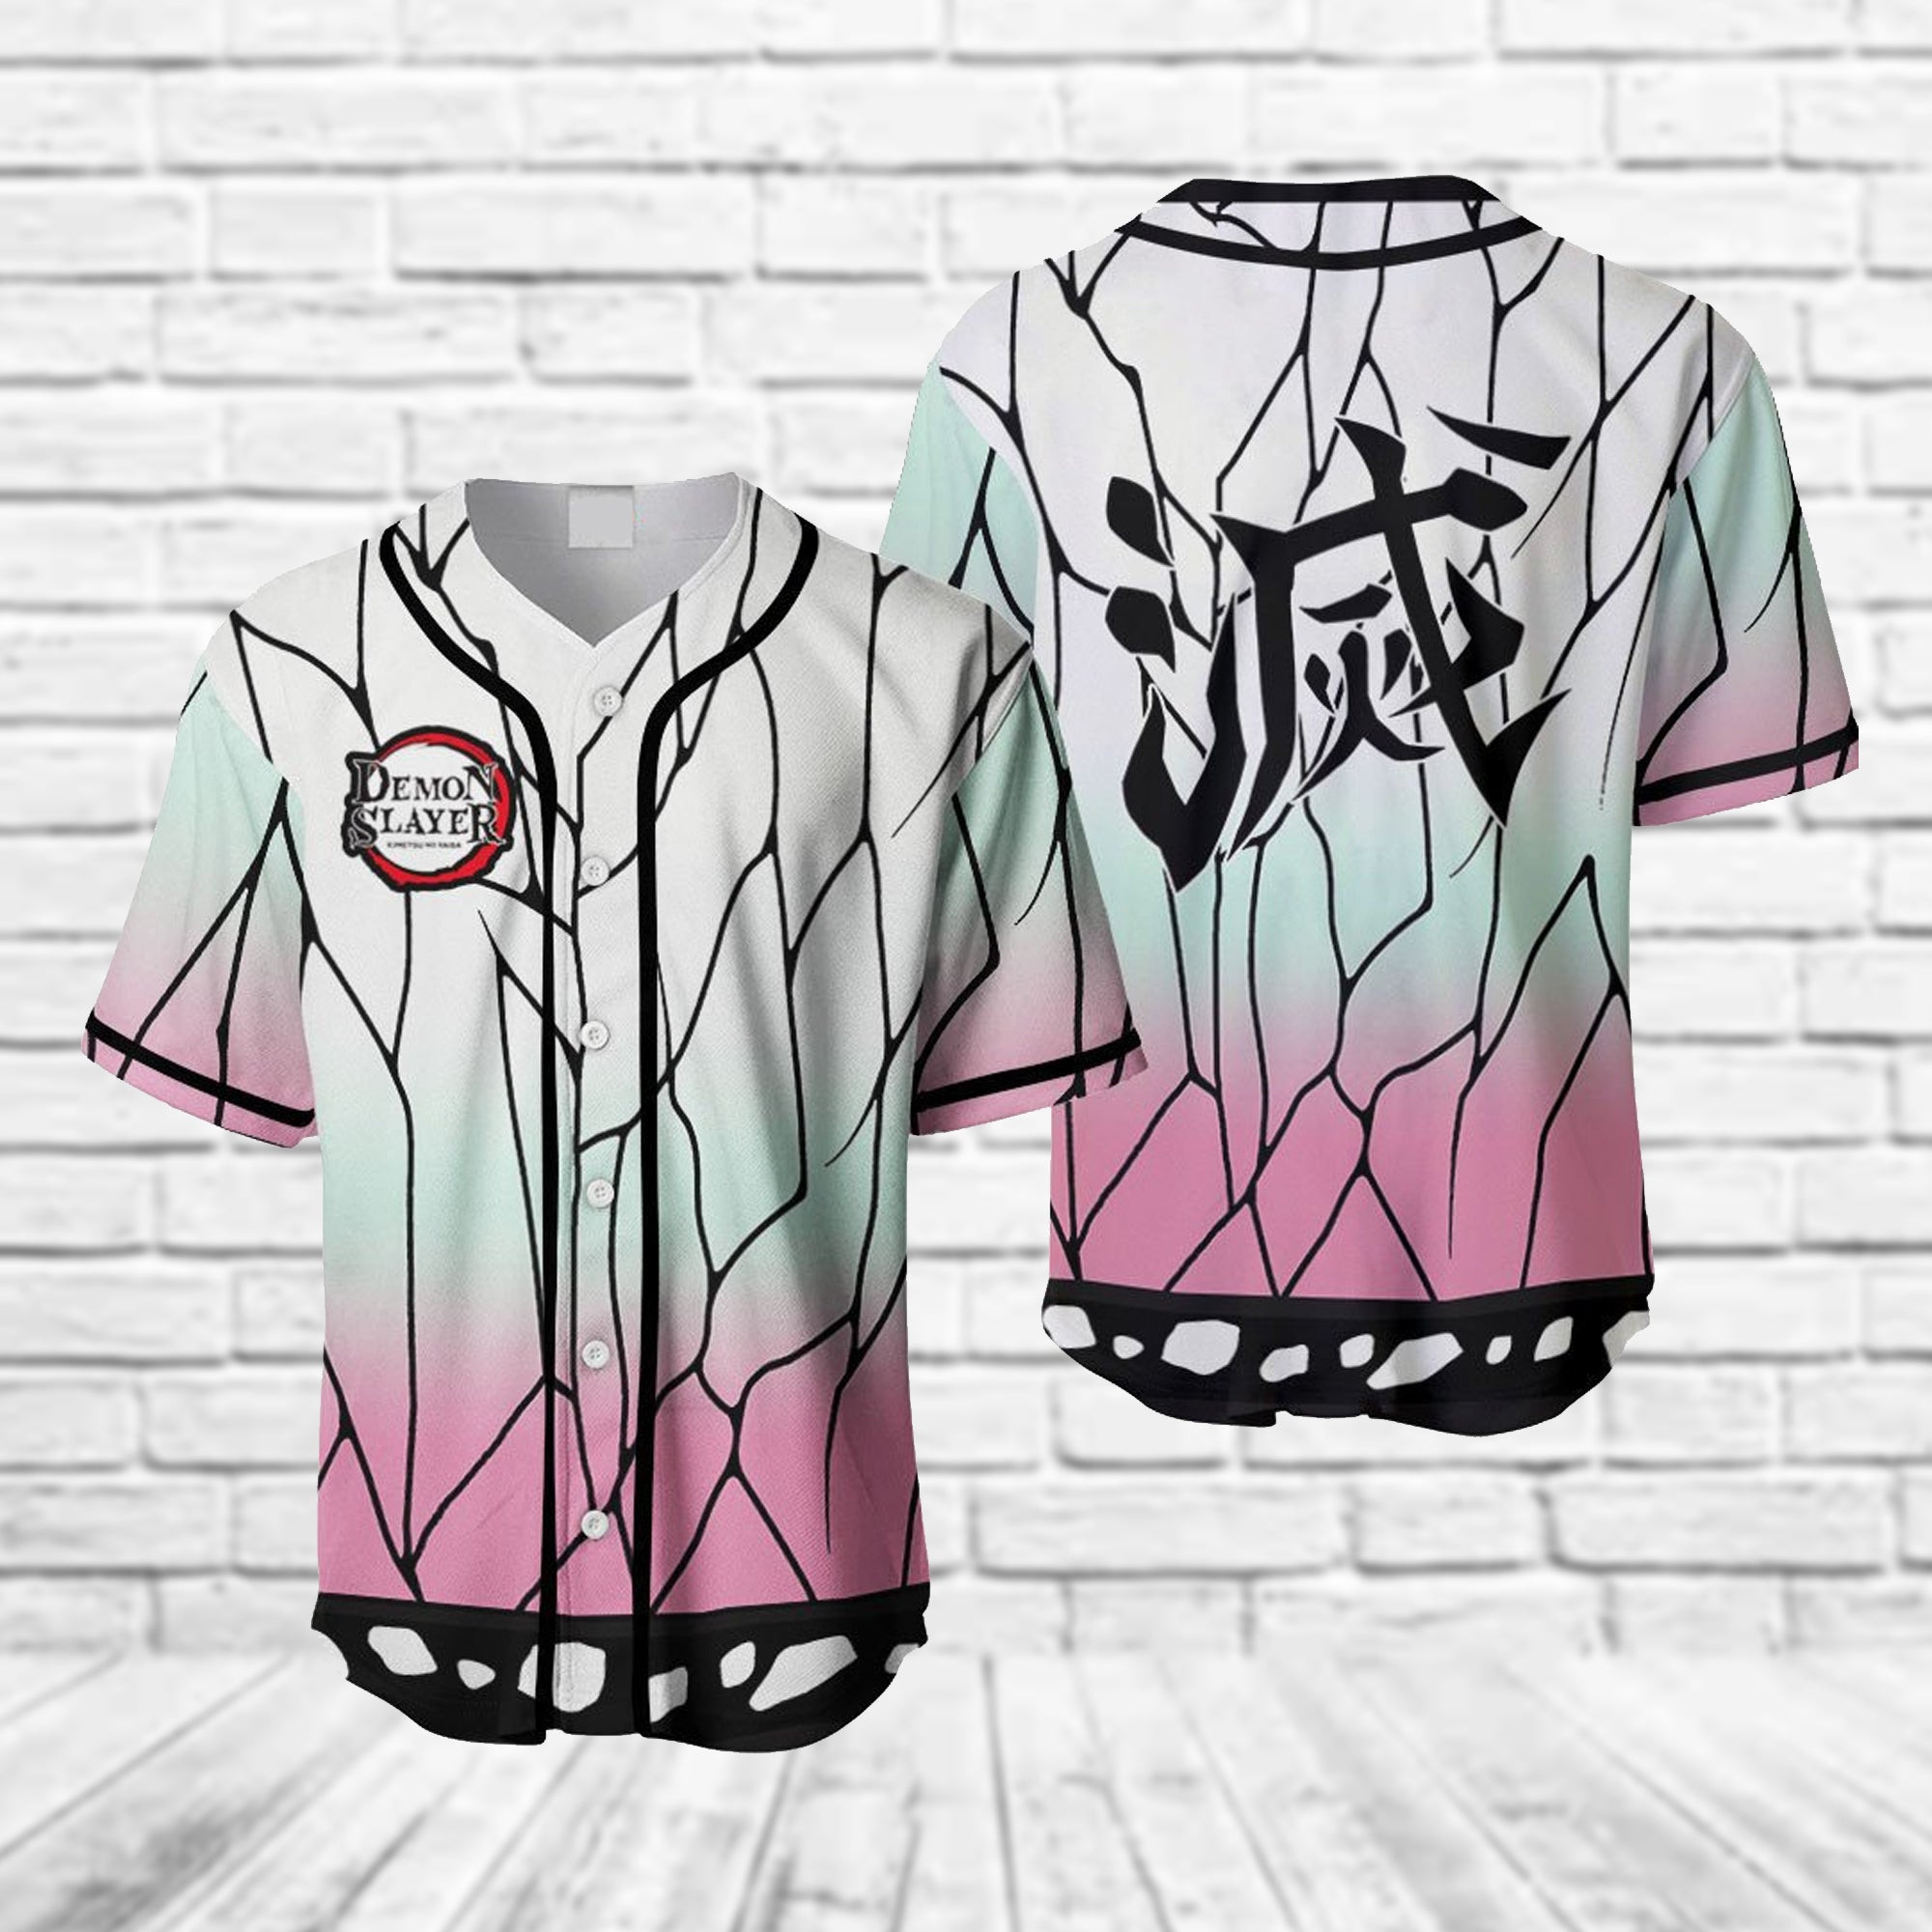 Shinobu Kocho Kimetsu No Yaiba Anime Baseball Jersey, Unisex Baseball Jersey for Men Women